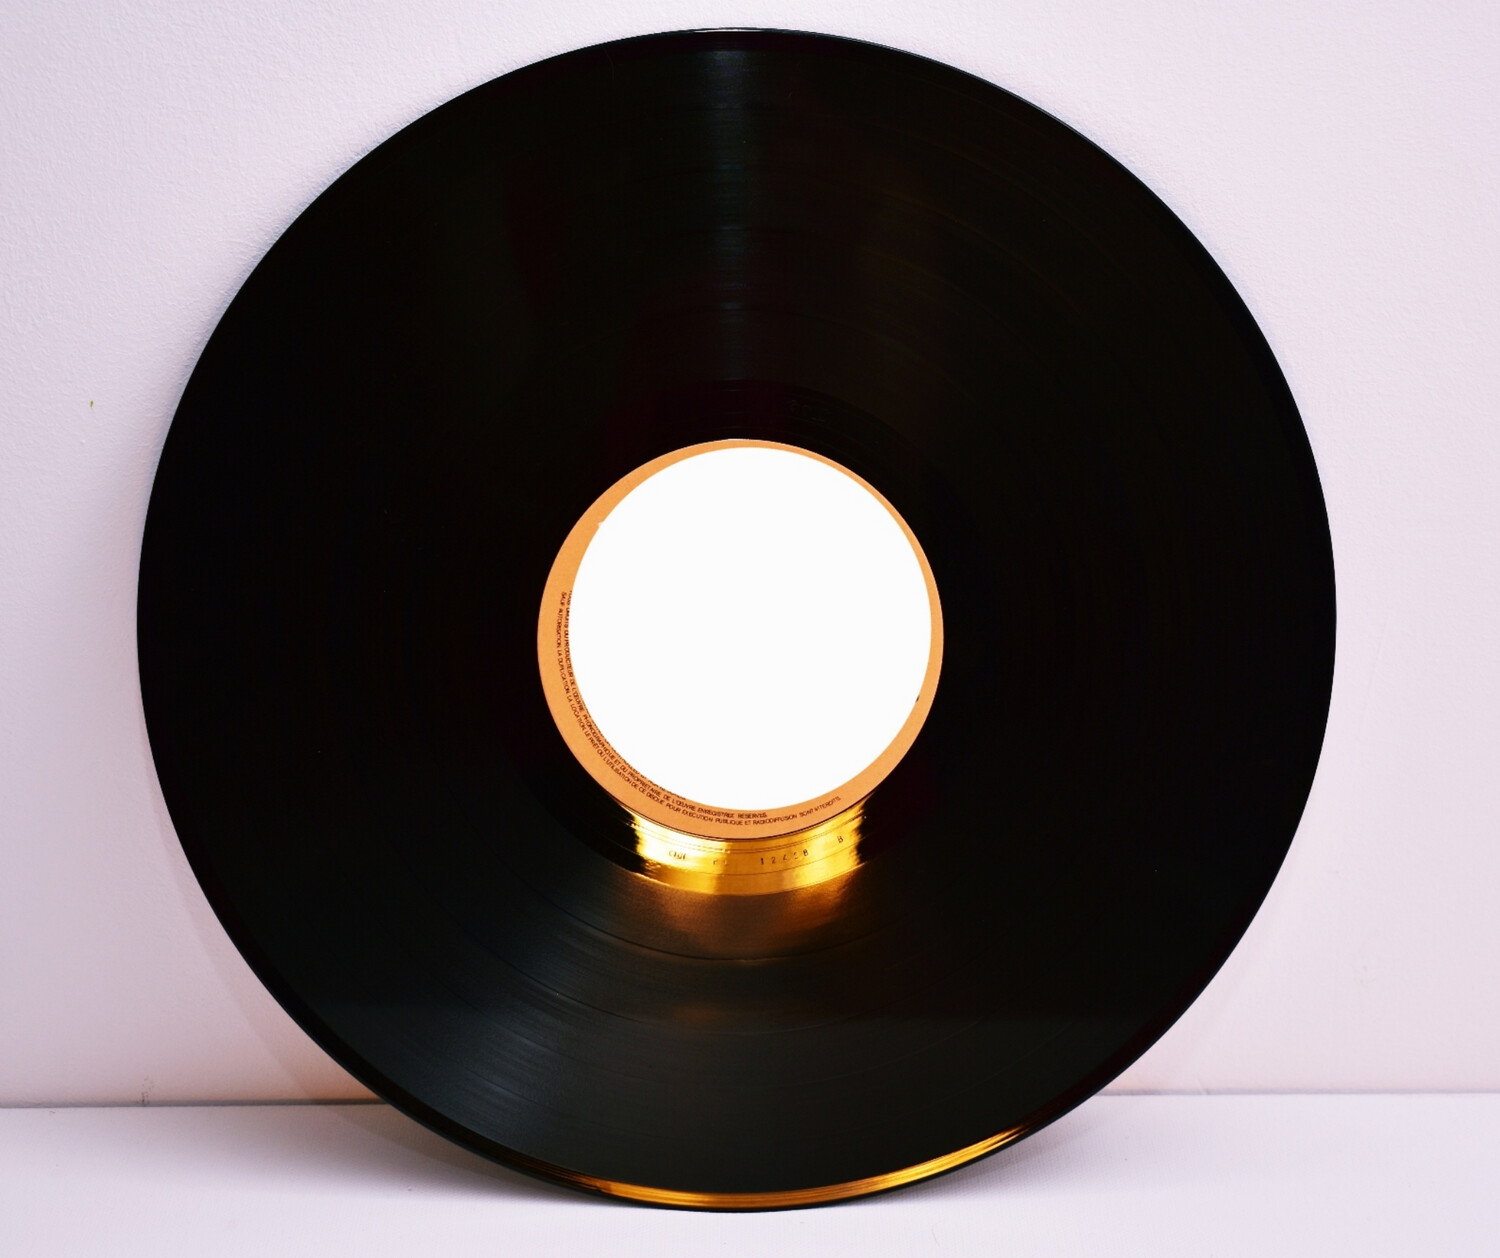 Rickie Lee Jones “Rickie Lee Jones”, Record